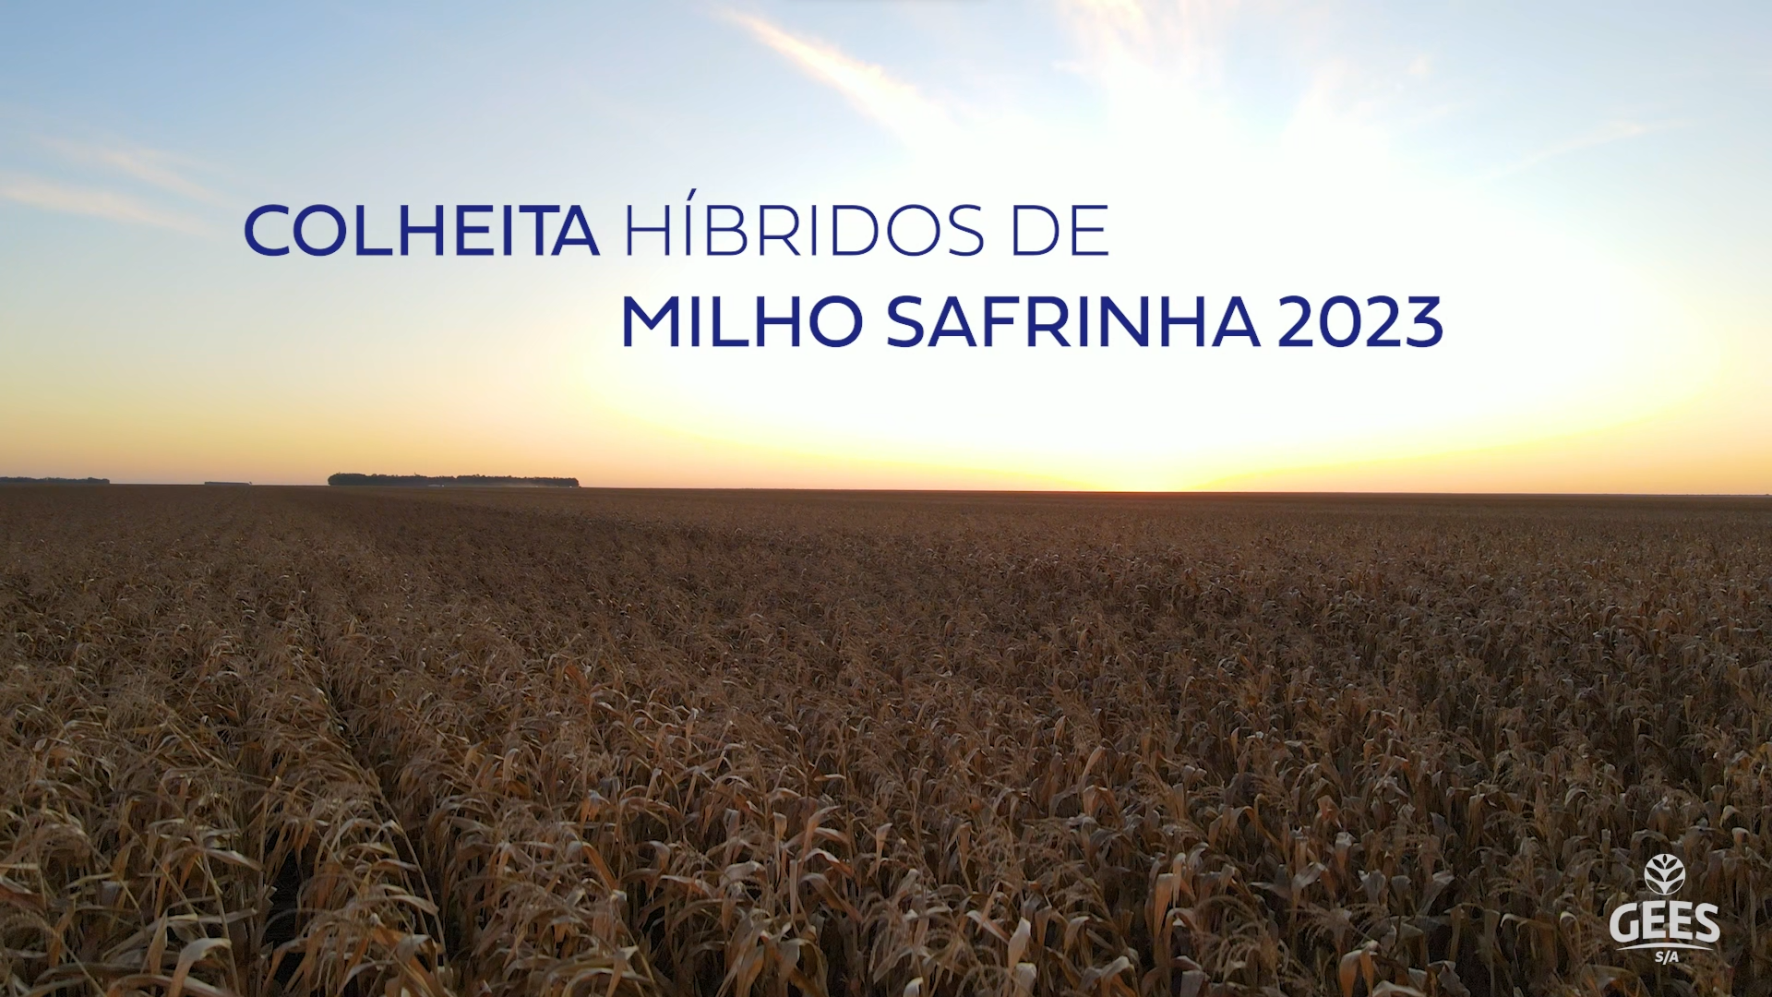 COLHEITA HÍBRIDOS DE MILHO SAFRINHA 2023